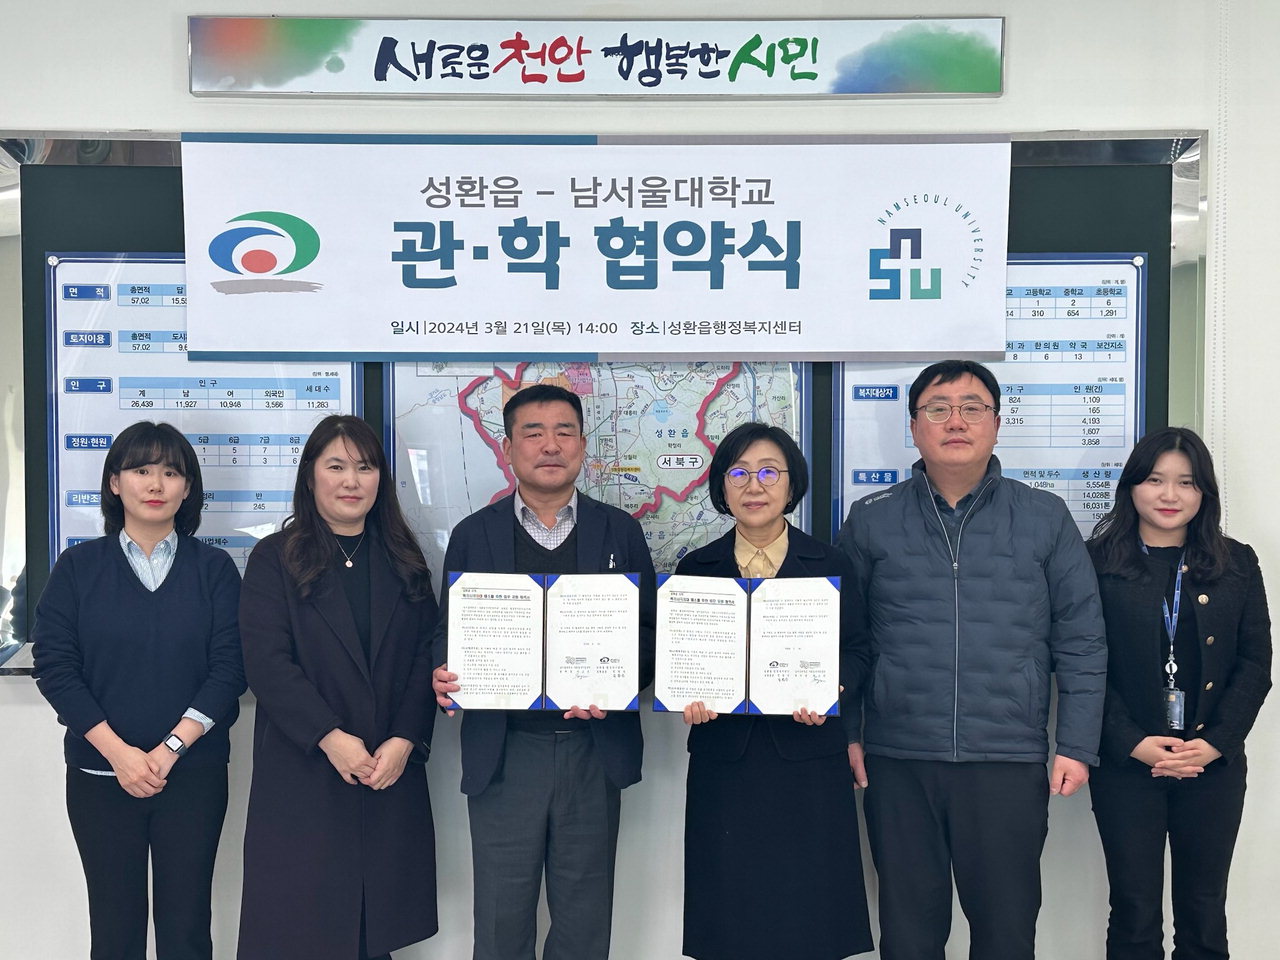 천안시 성환읍과 남서울대학교 사회봉사지원센터가 21일 협약을 체결하고 있다./천안시